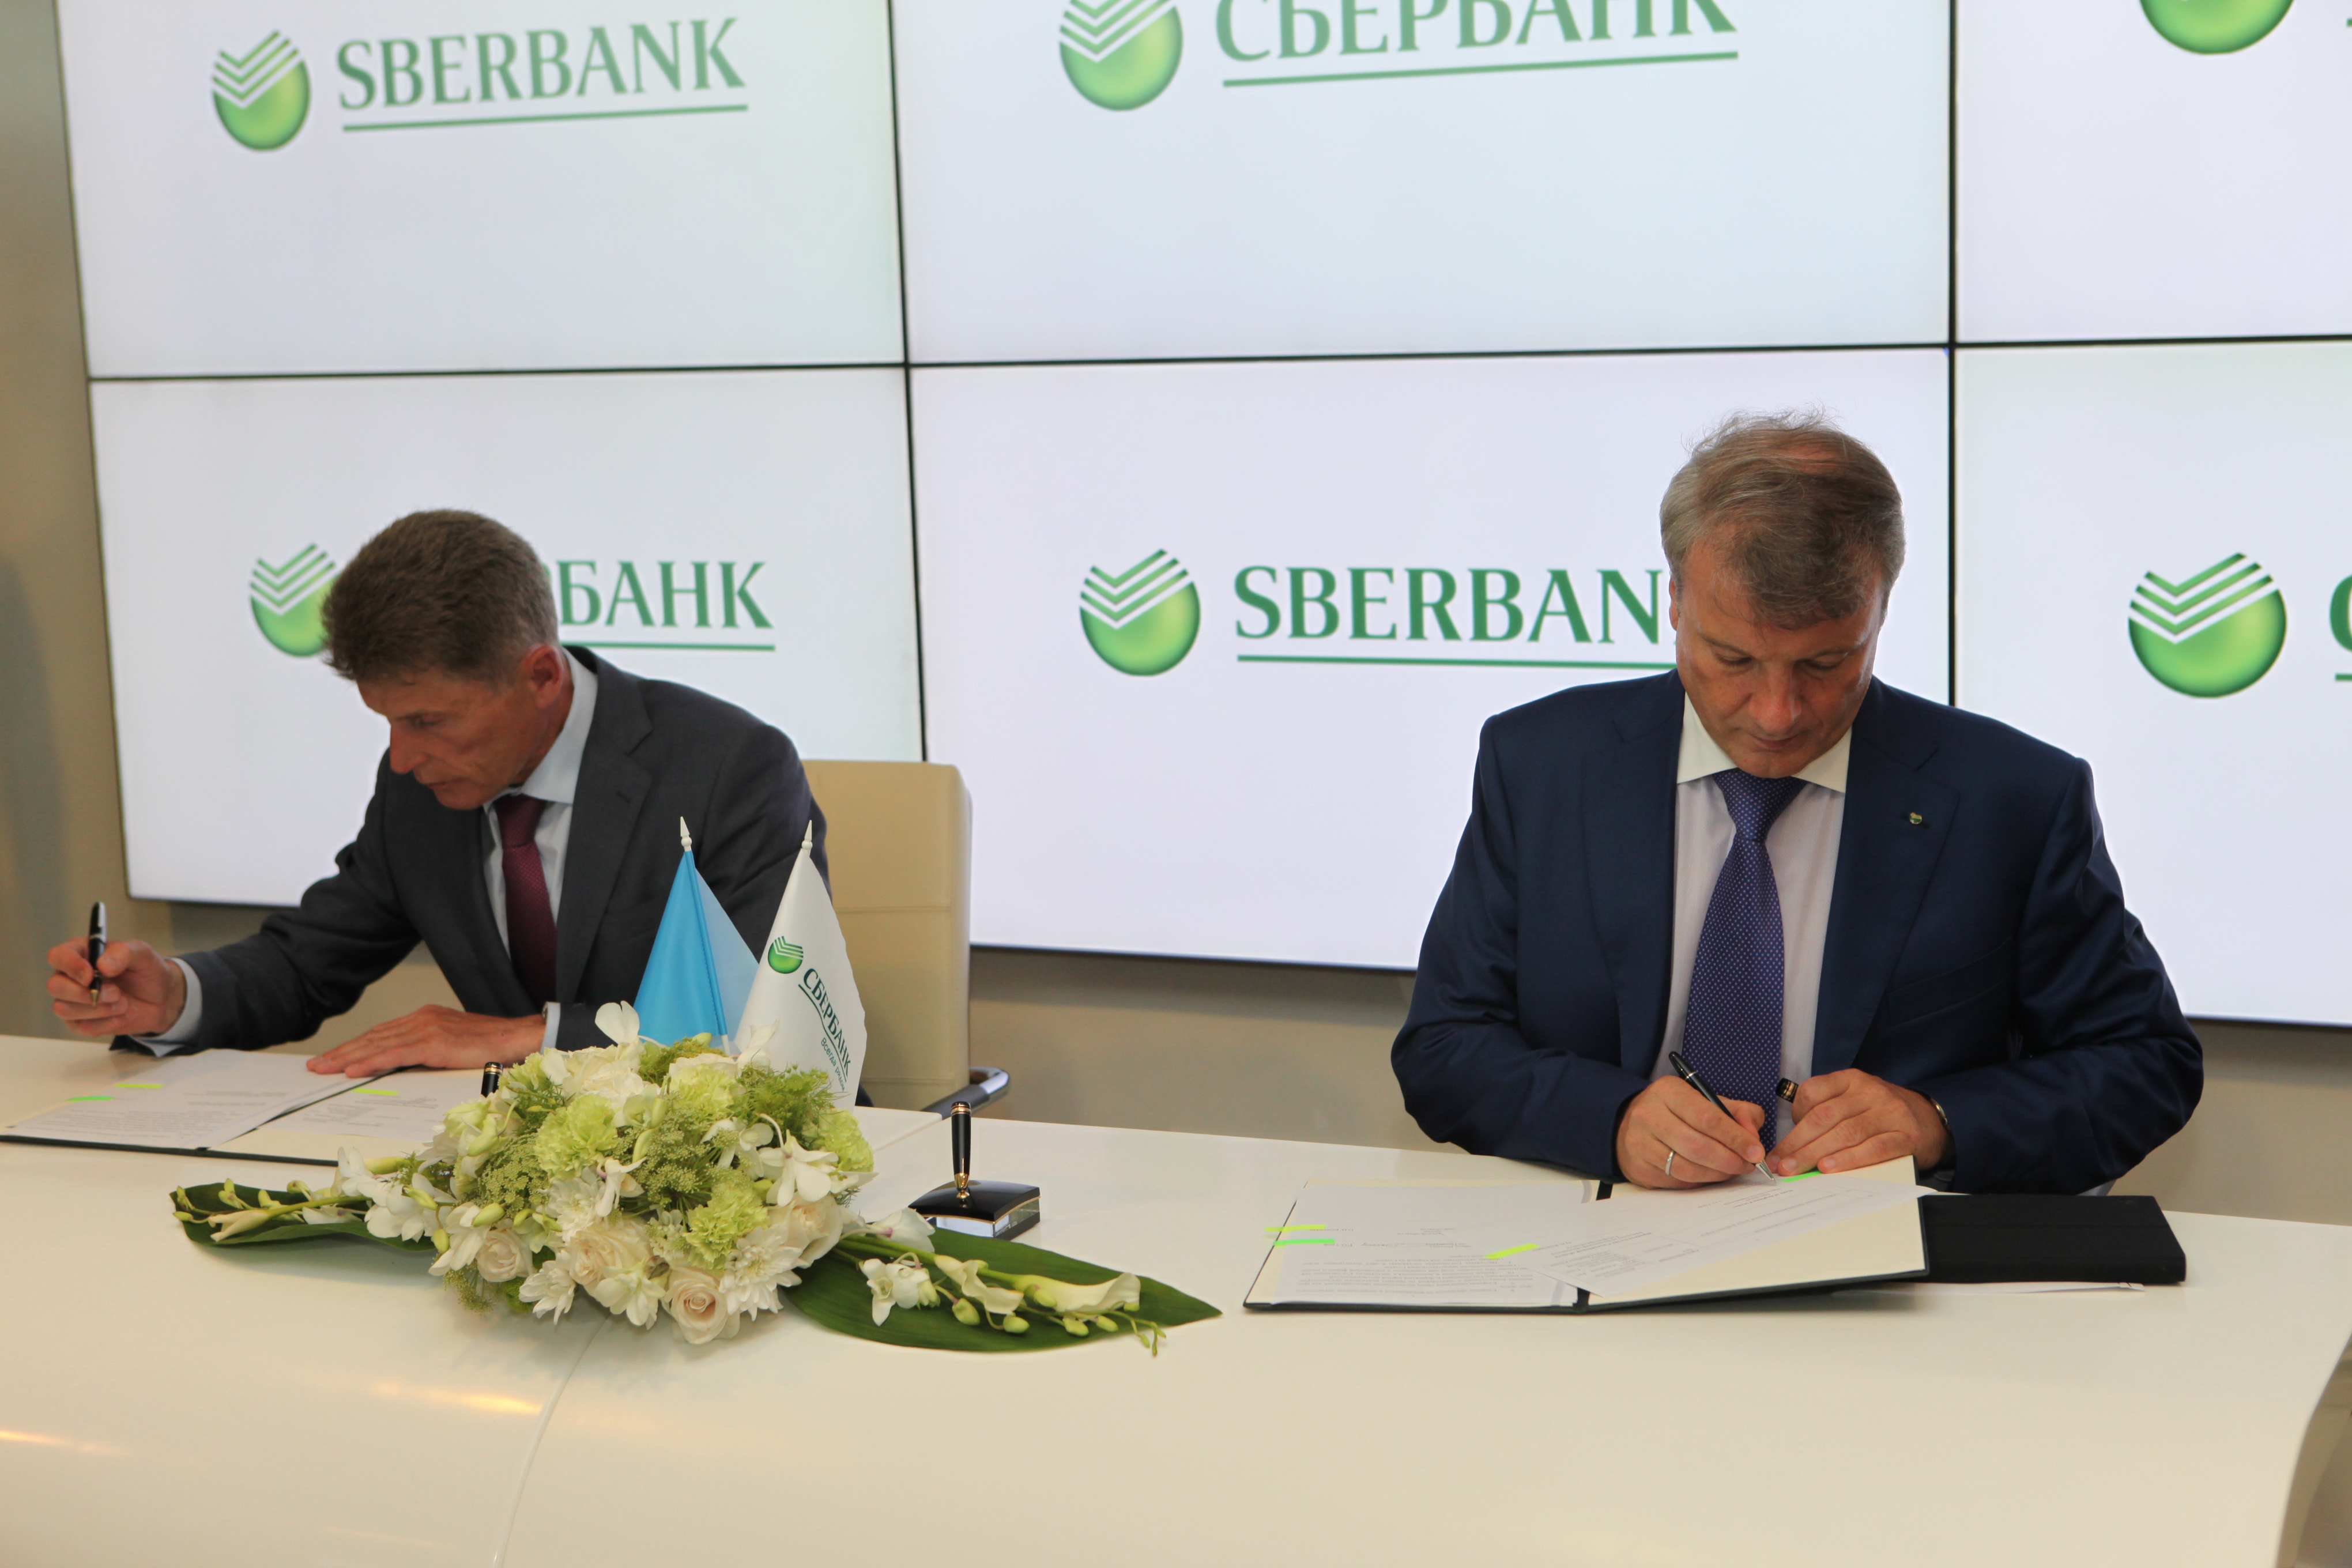 Сбербанк и Сахалинская область создадут «Рыбную биржу»